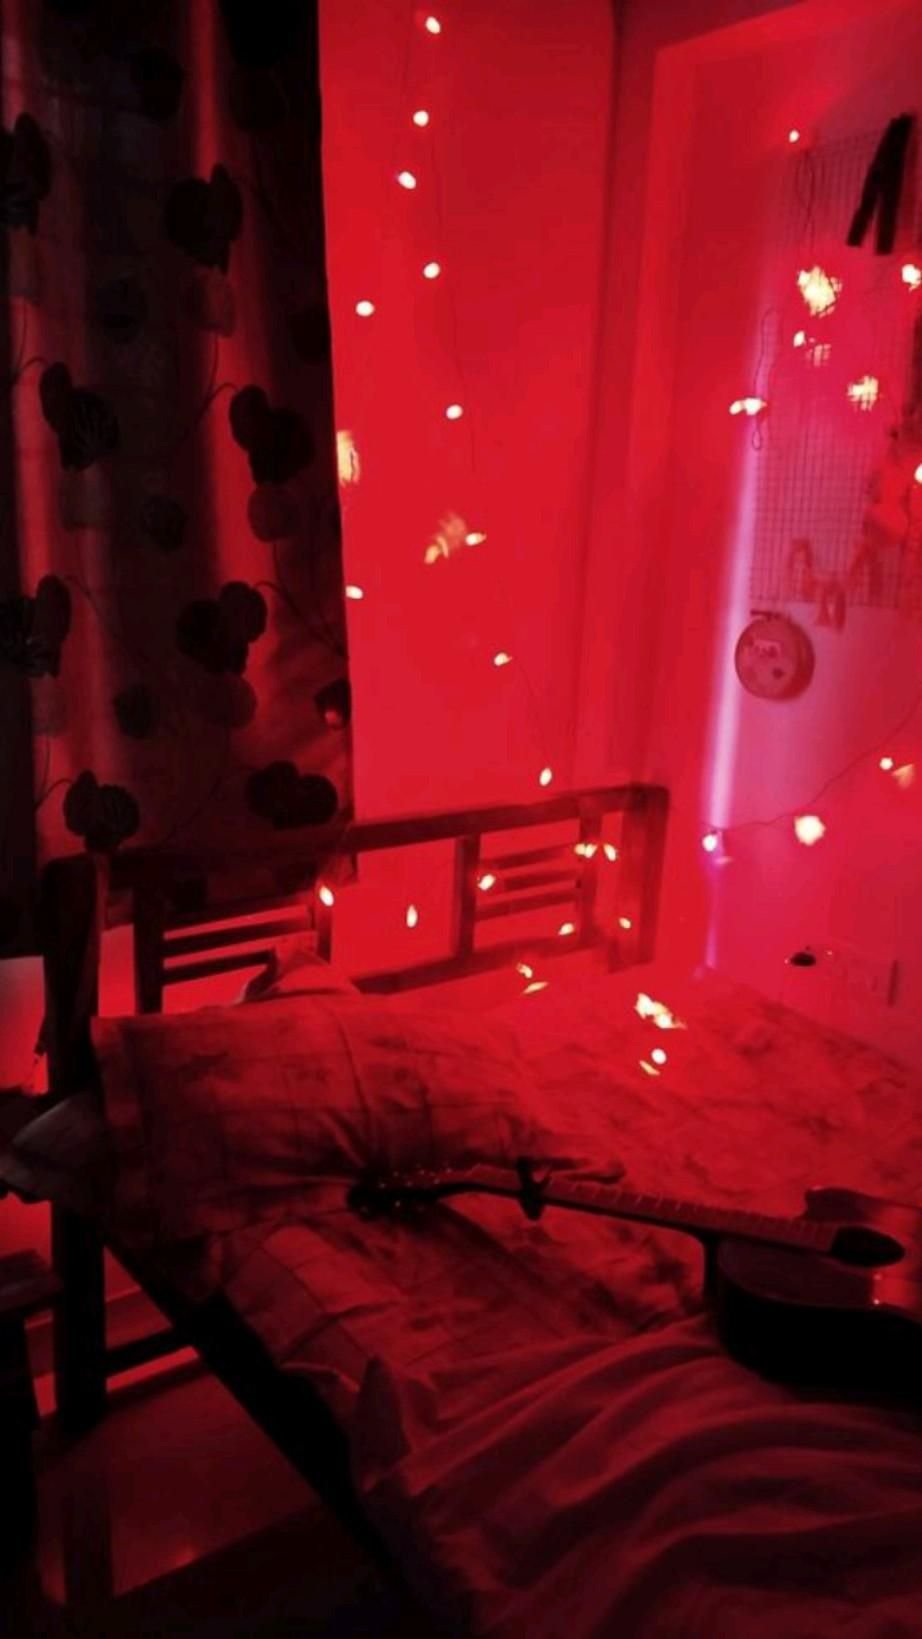 Включи red room. Red Room" красная комната  (1999) ужасы ". Комната с красной подсветкой. Красная подсветка в спальне. Красный свет в комнате.